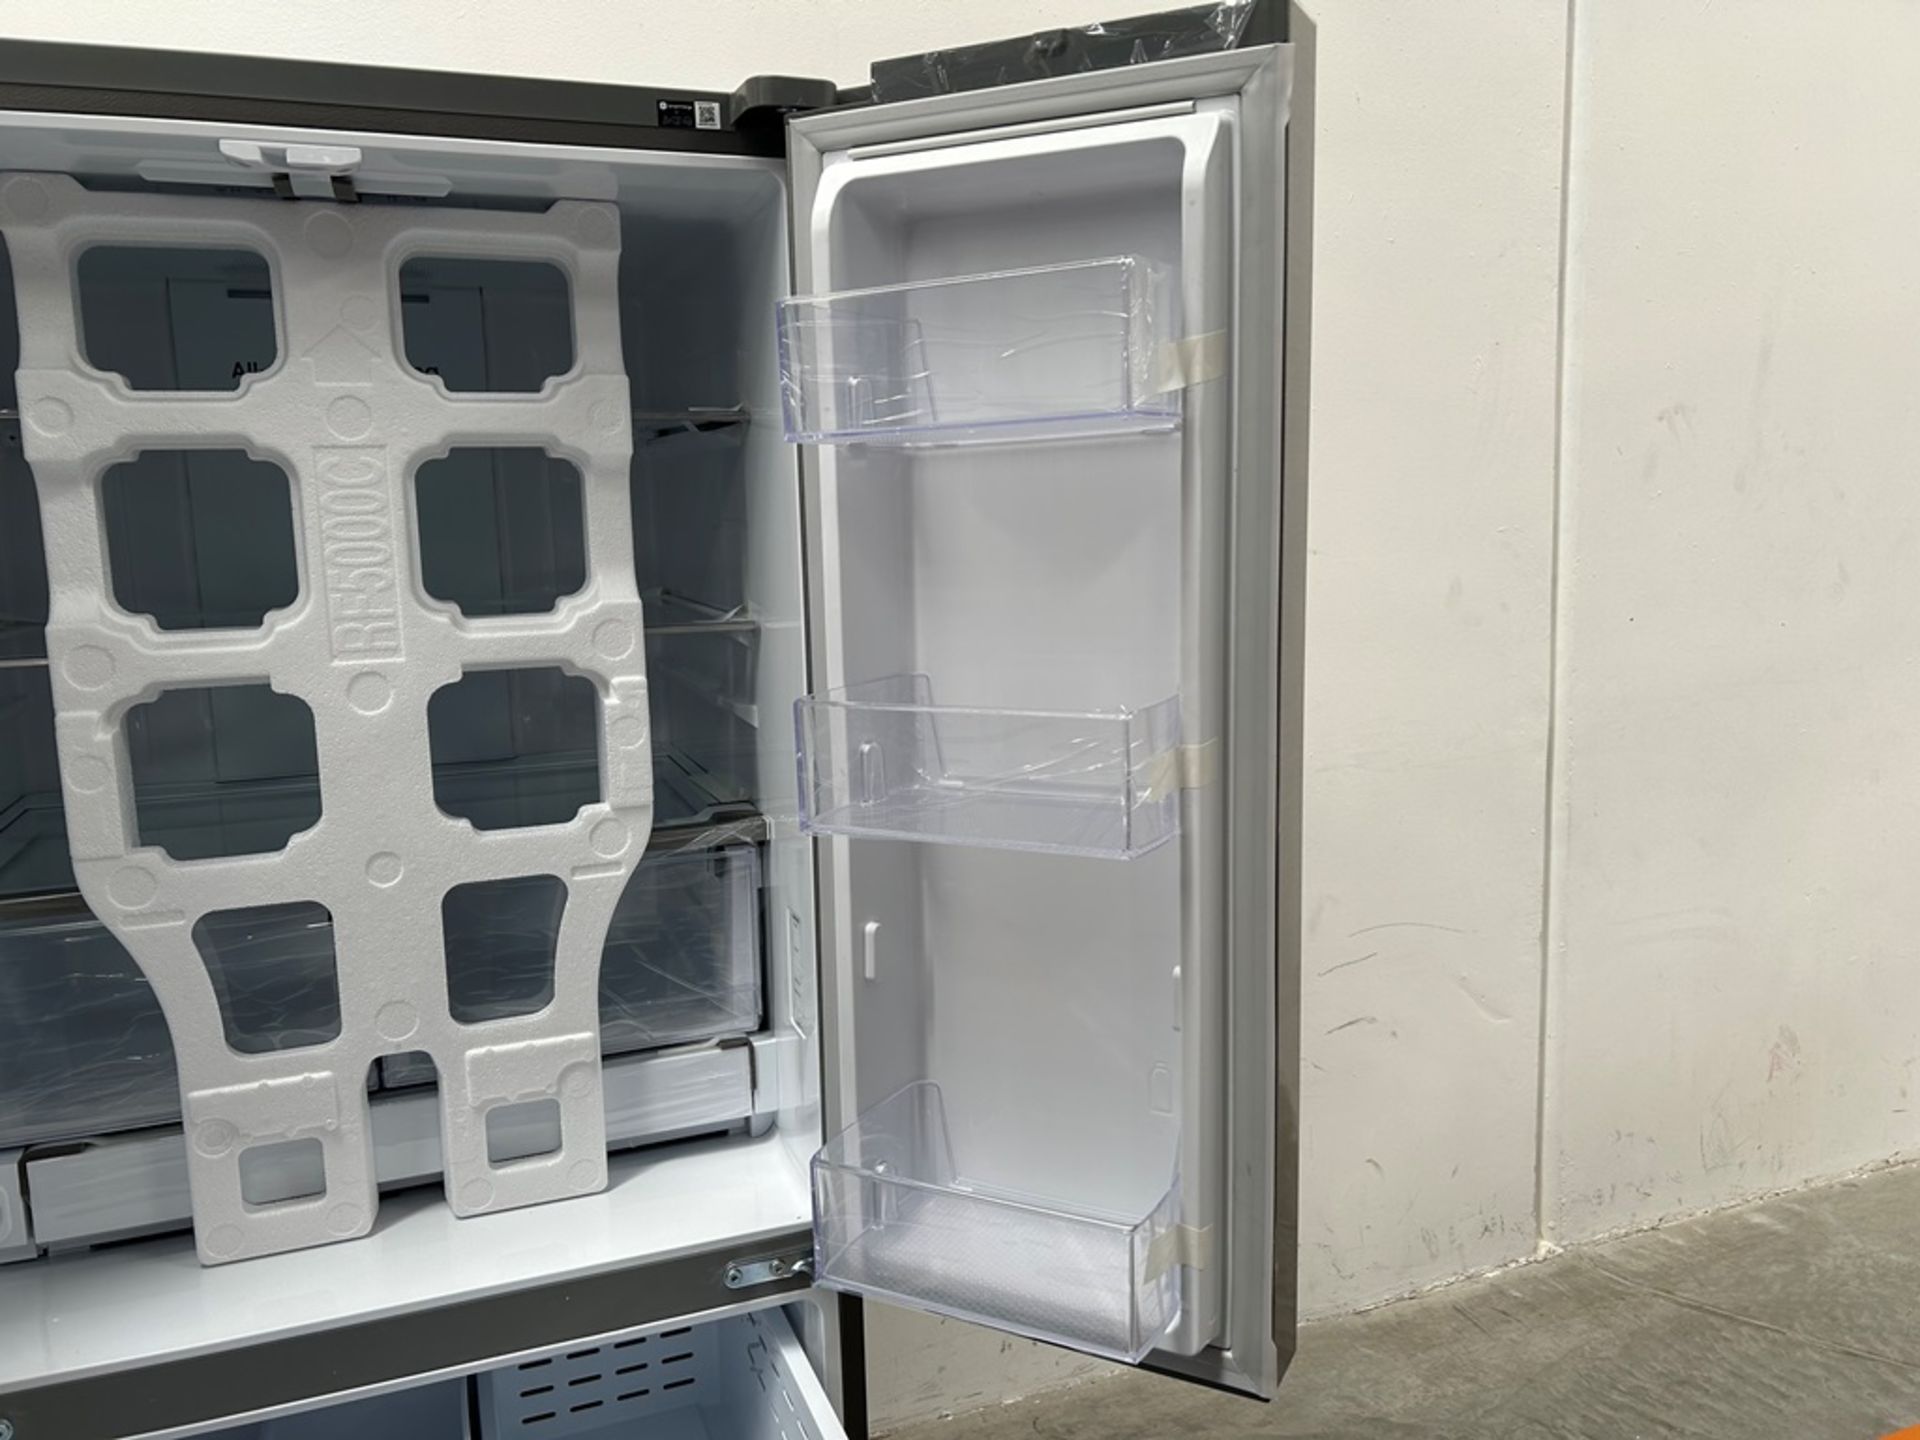 (NUEVO) Refrigerador Marca SAMSUNG, Modelo RF25C5151S9, Serie 00634V, Color GRIS - Image 7 of 11